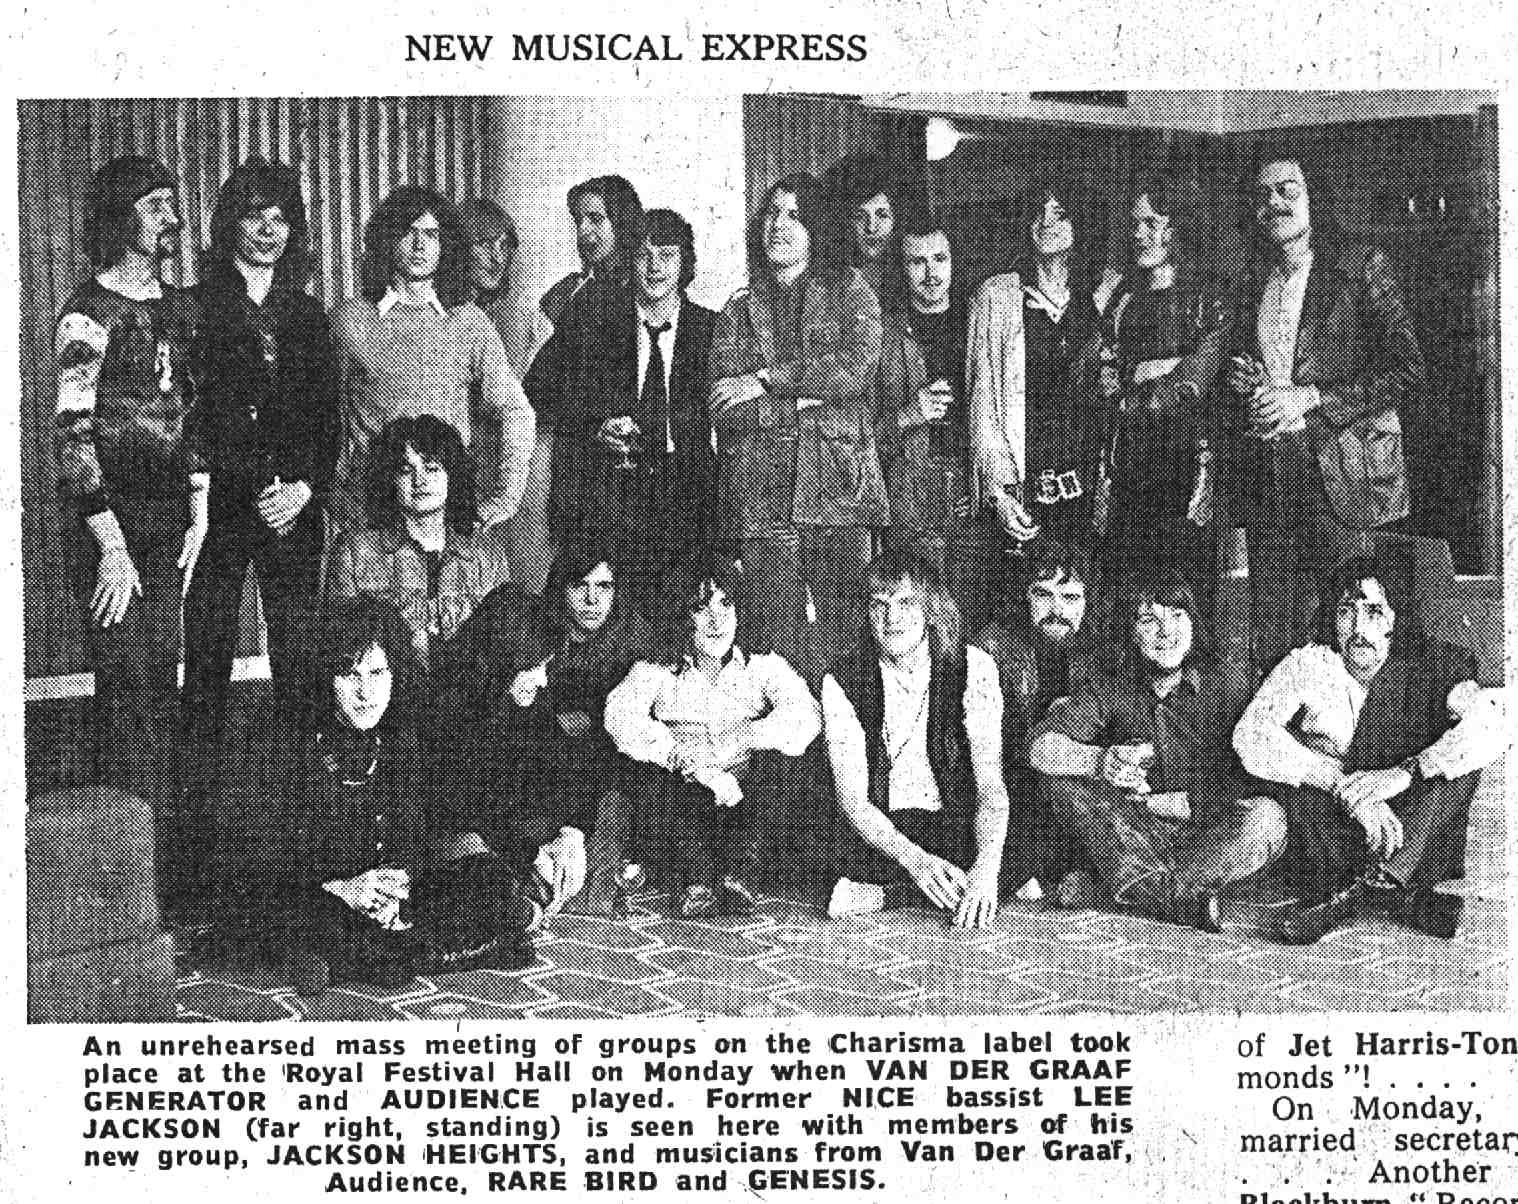 New Musical Express, June 6, 1970